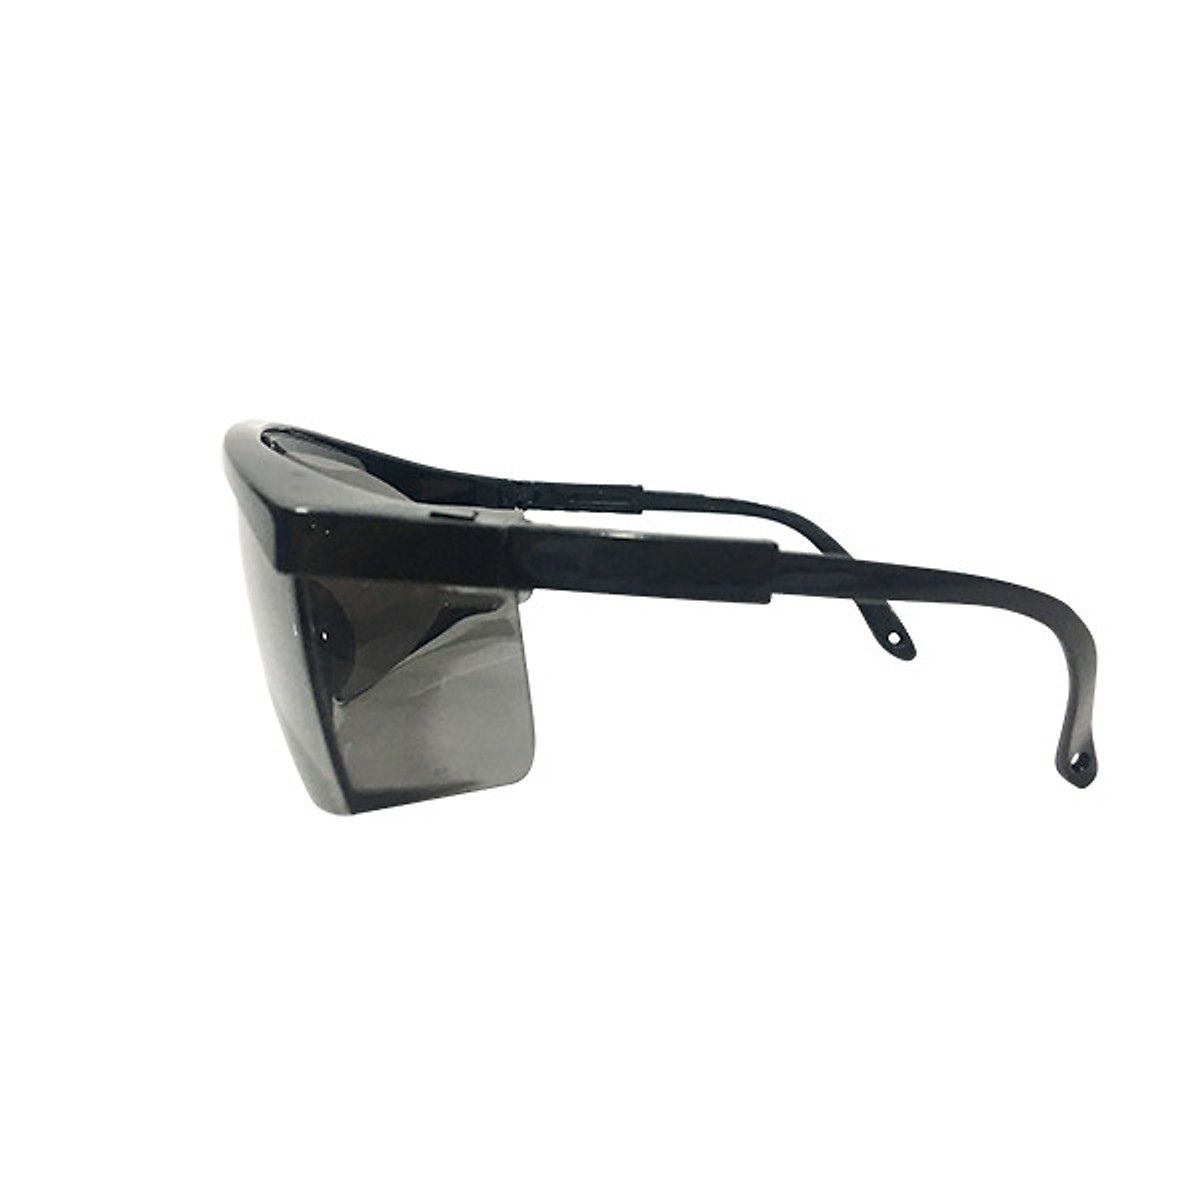 T- Kính bảo hộ Kings KY152 Mắt kính chống bụi chống trầy xước chống tia UV đọng sương dùng cho lao động, đi xe máy (đen)